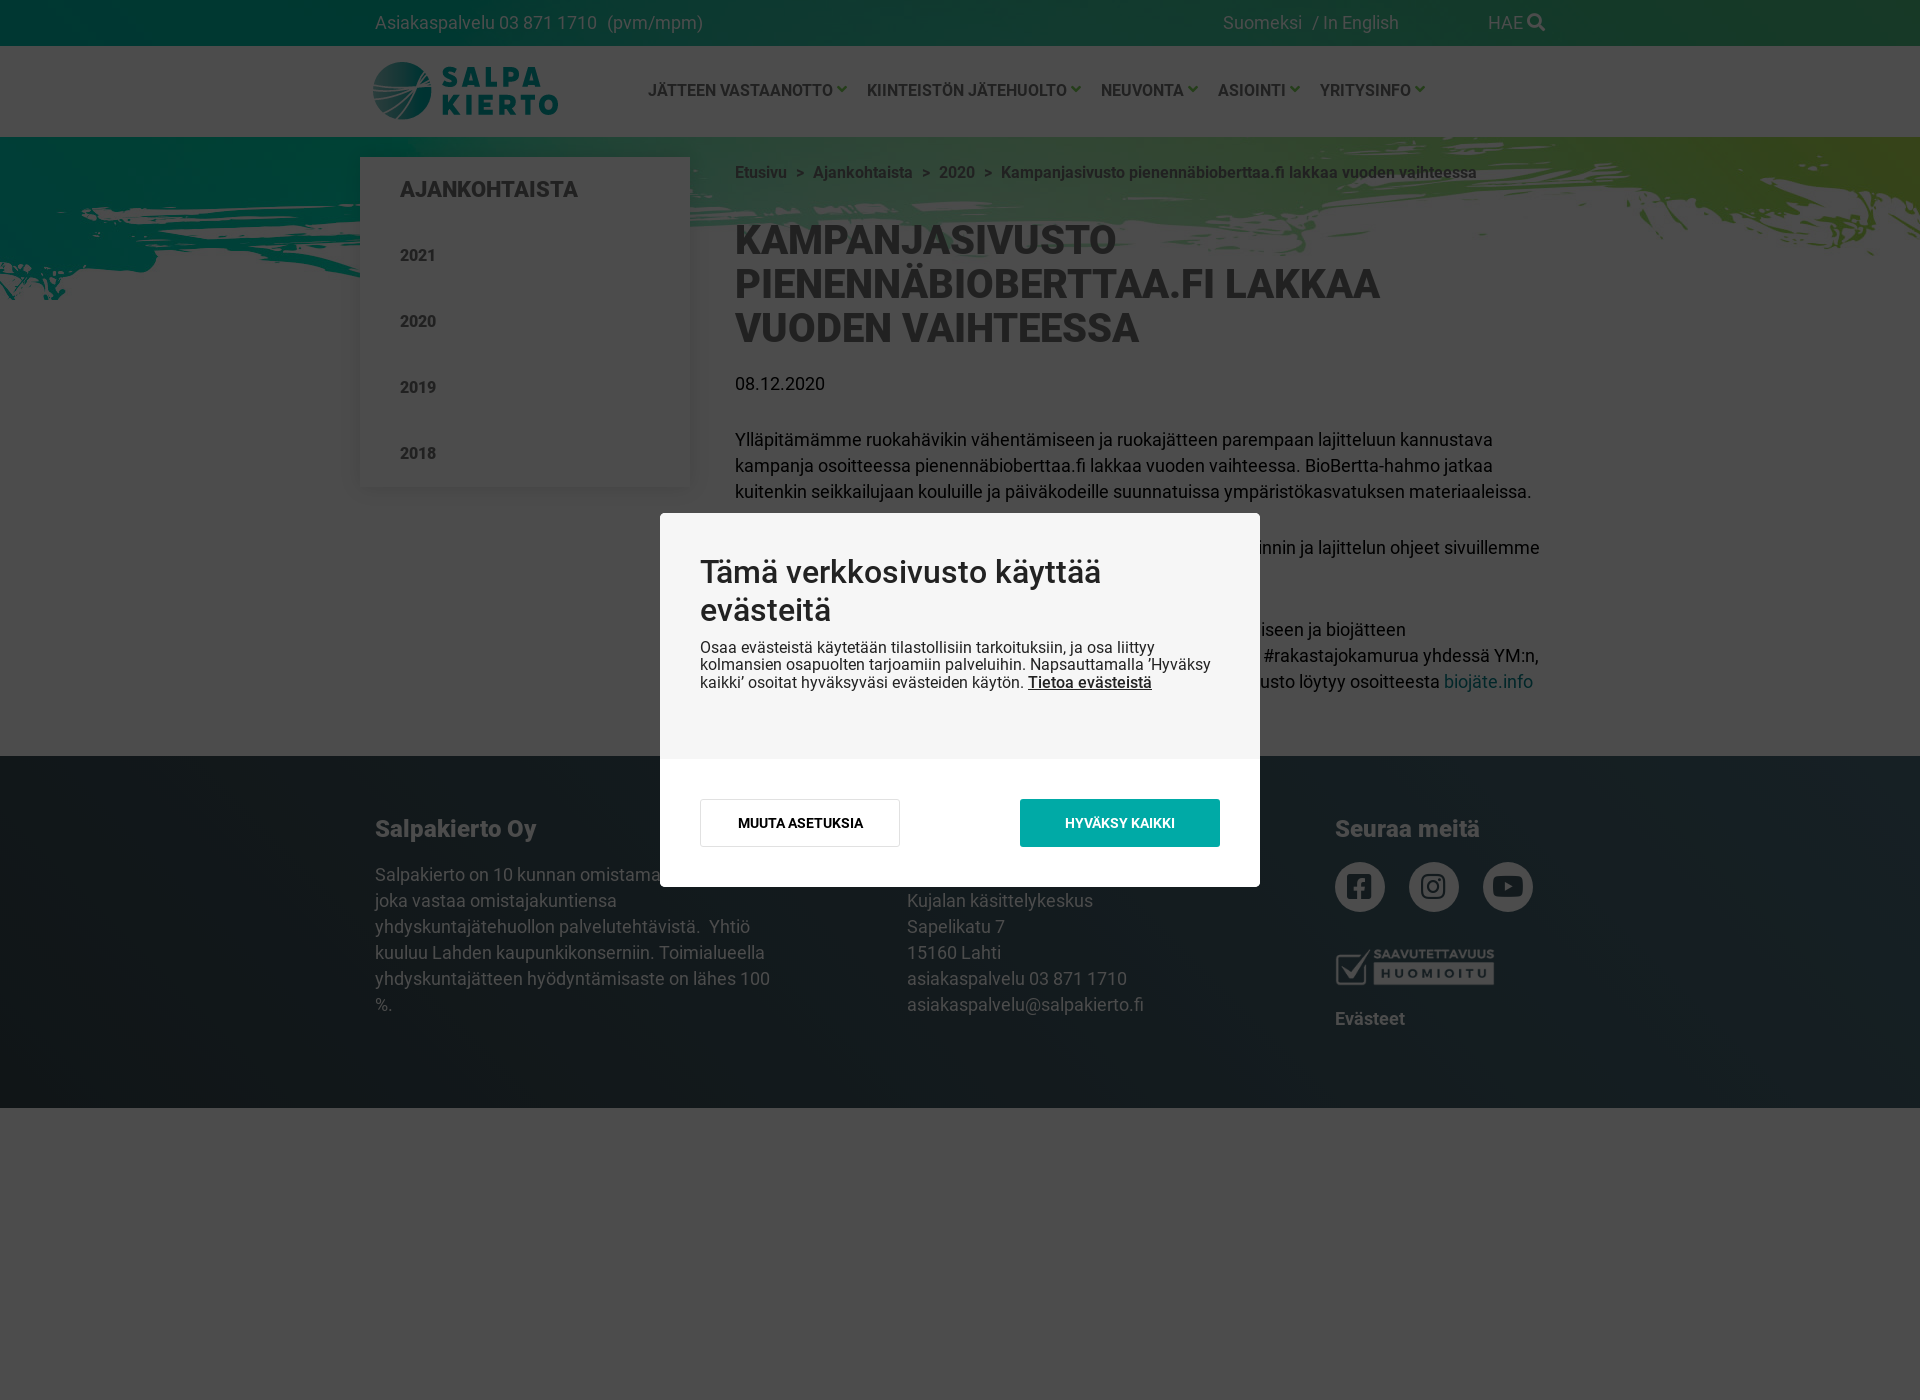 Skärmdump för pienennäbioberttaa.fi